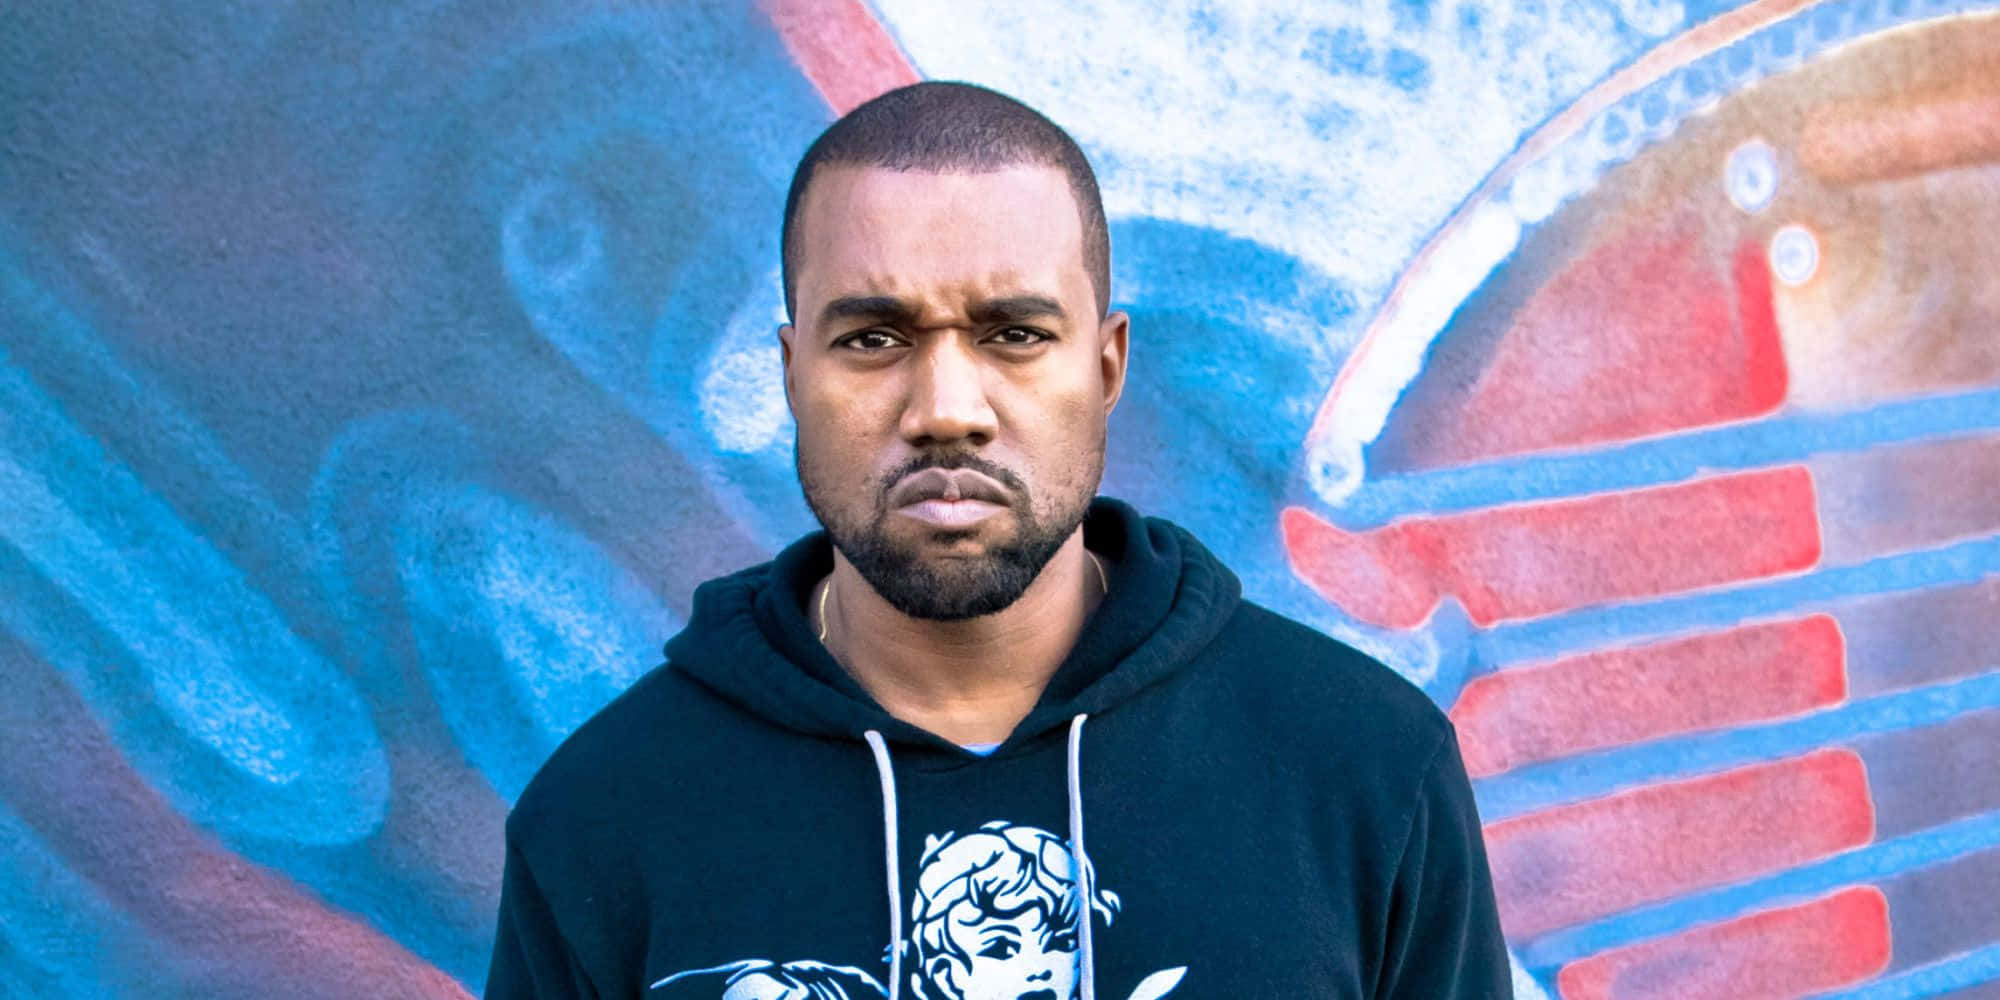 Kanye West - Kanye West - Kanye West - Kanye West - Kanye